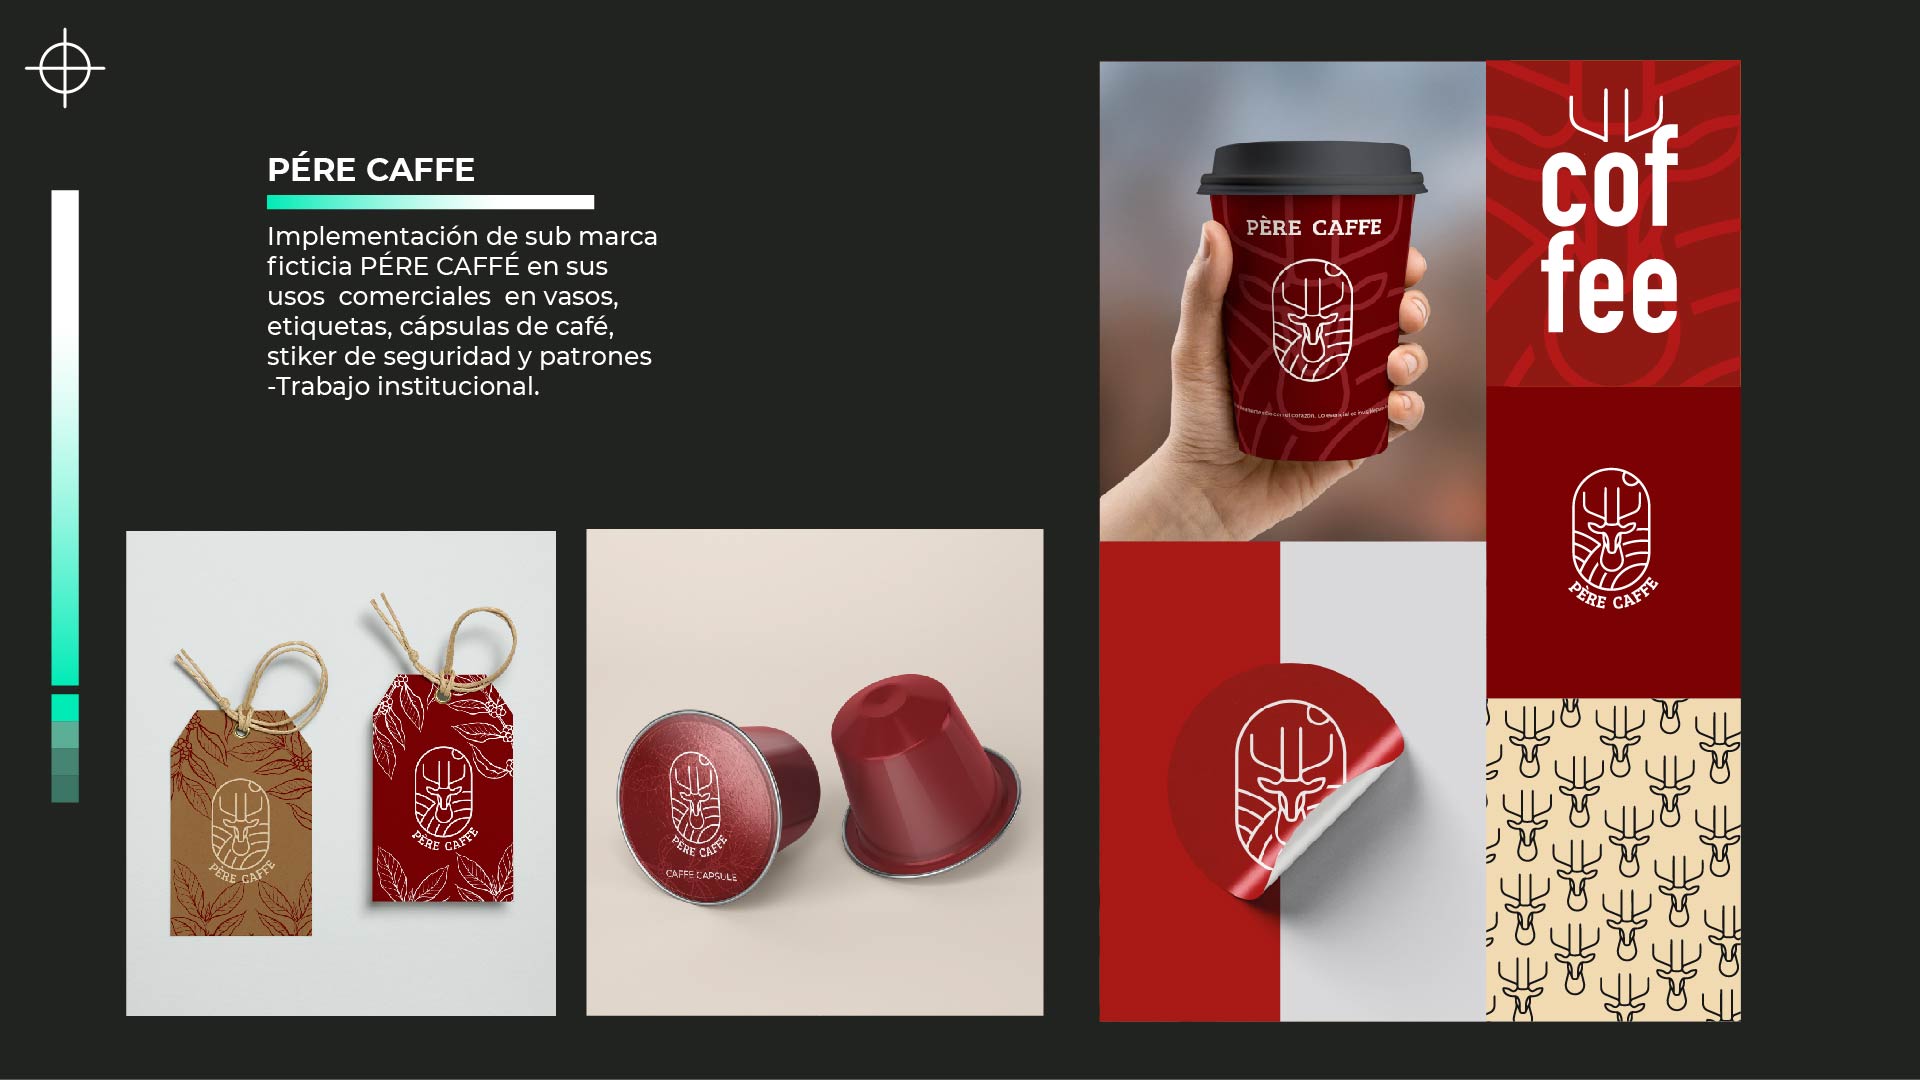 PERE CAFFE

CL ——
Implementacion de sub marca
ficticia PERE CAFFE en sus
usos comerciales en vasos,
etiquetas, capsulas de café,
stiker de seguridad y patrones
-Trabajo institucional.

      
 
 
 
 
  

A AN 353